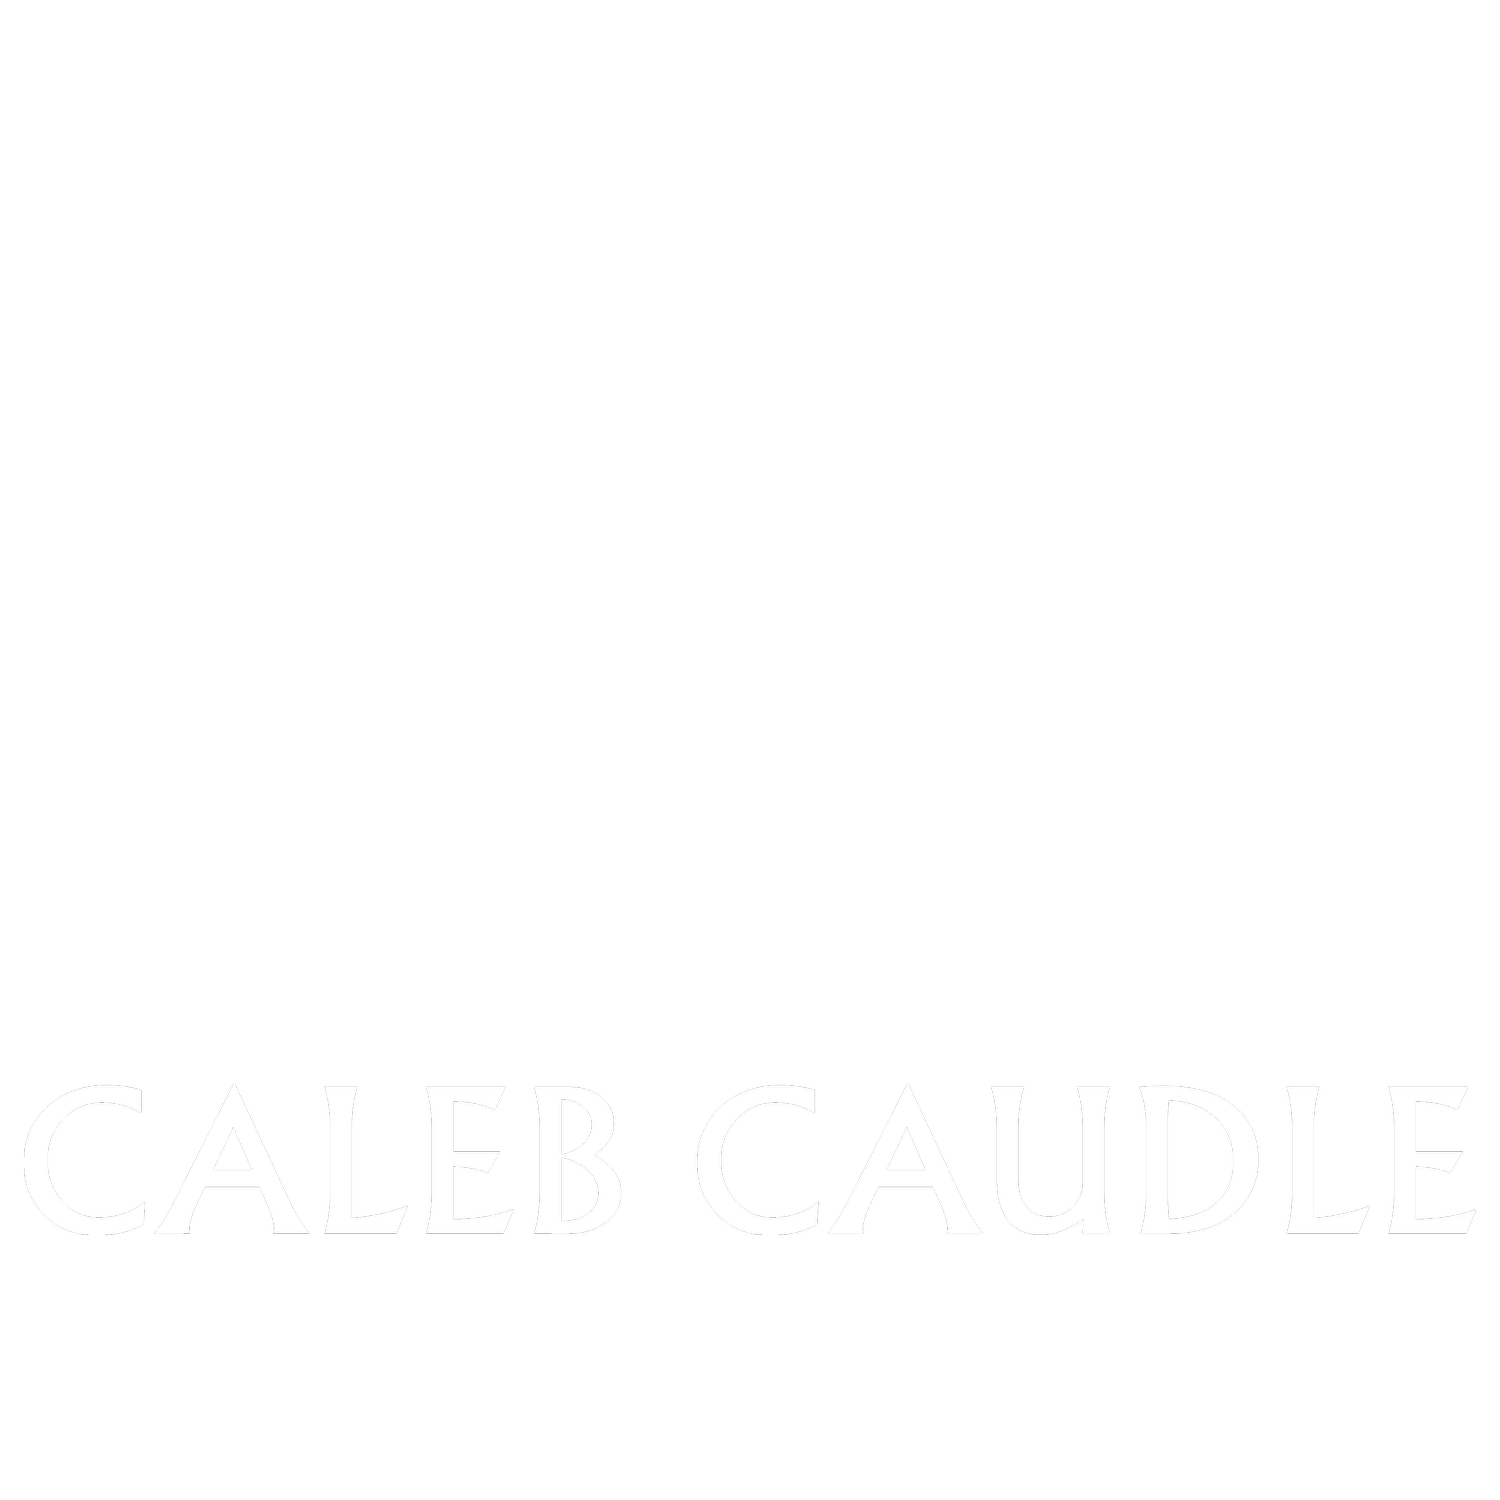 Caleb Caudle